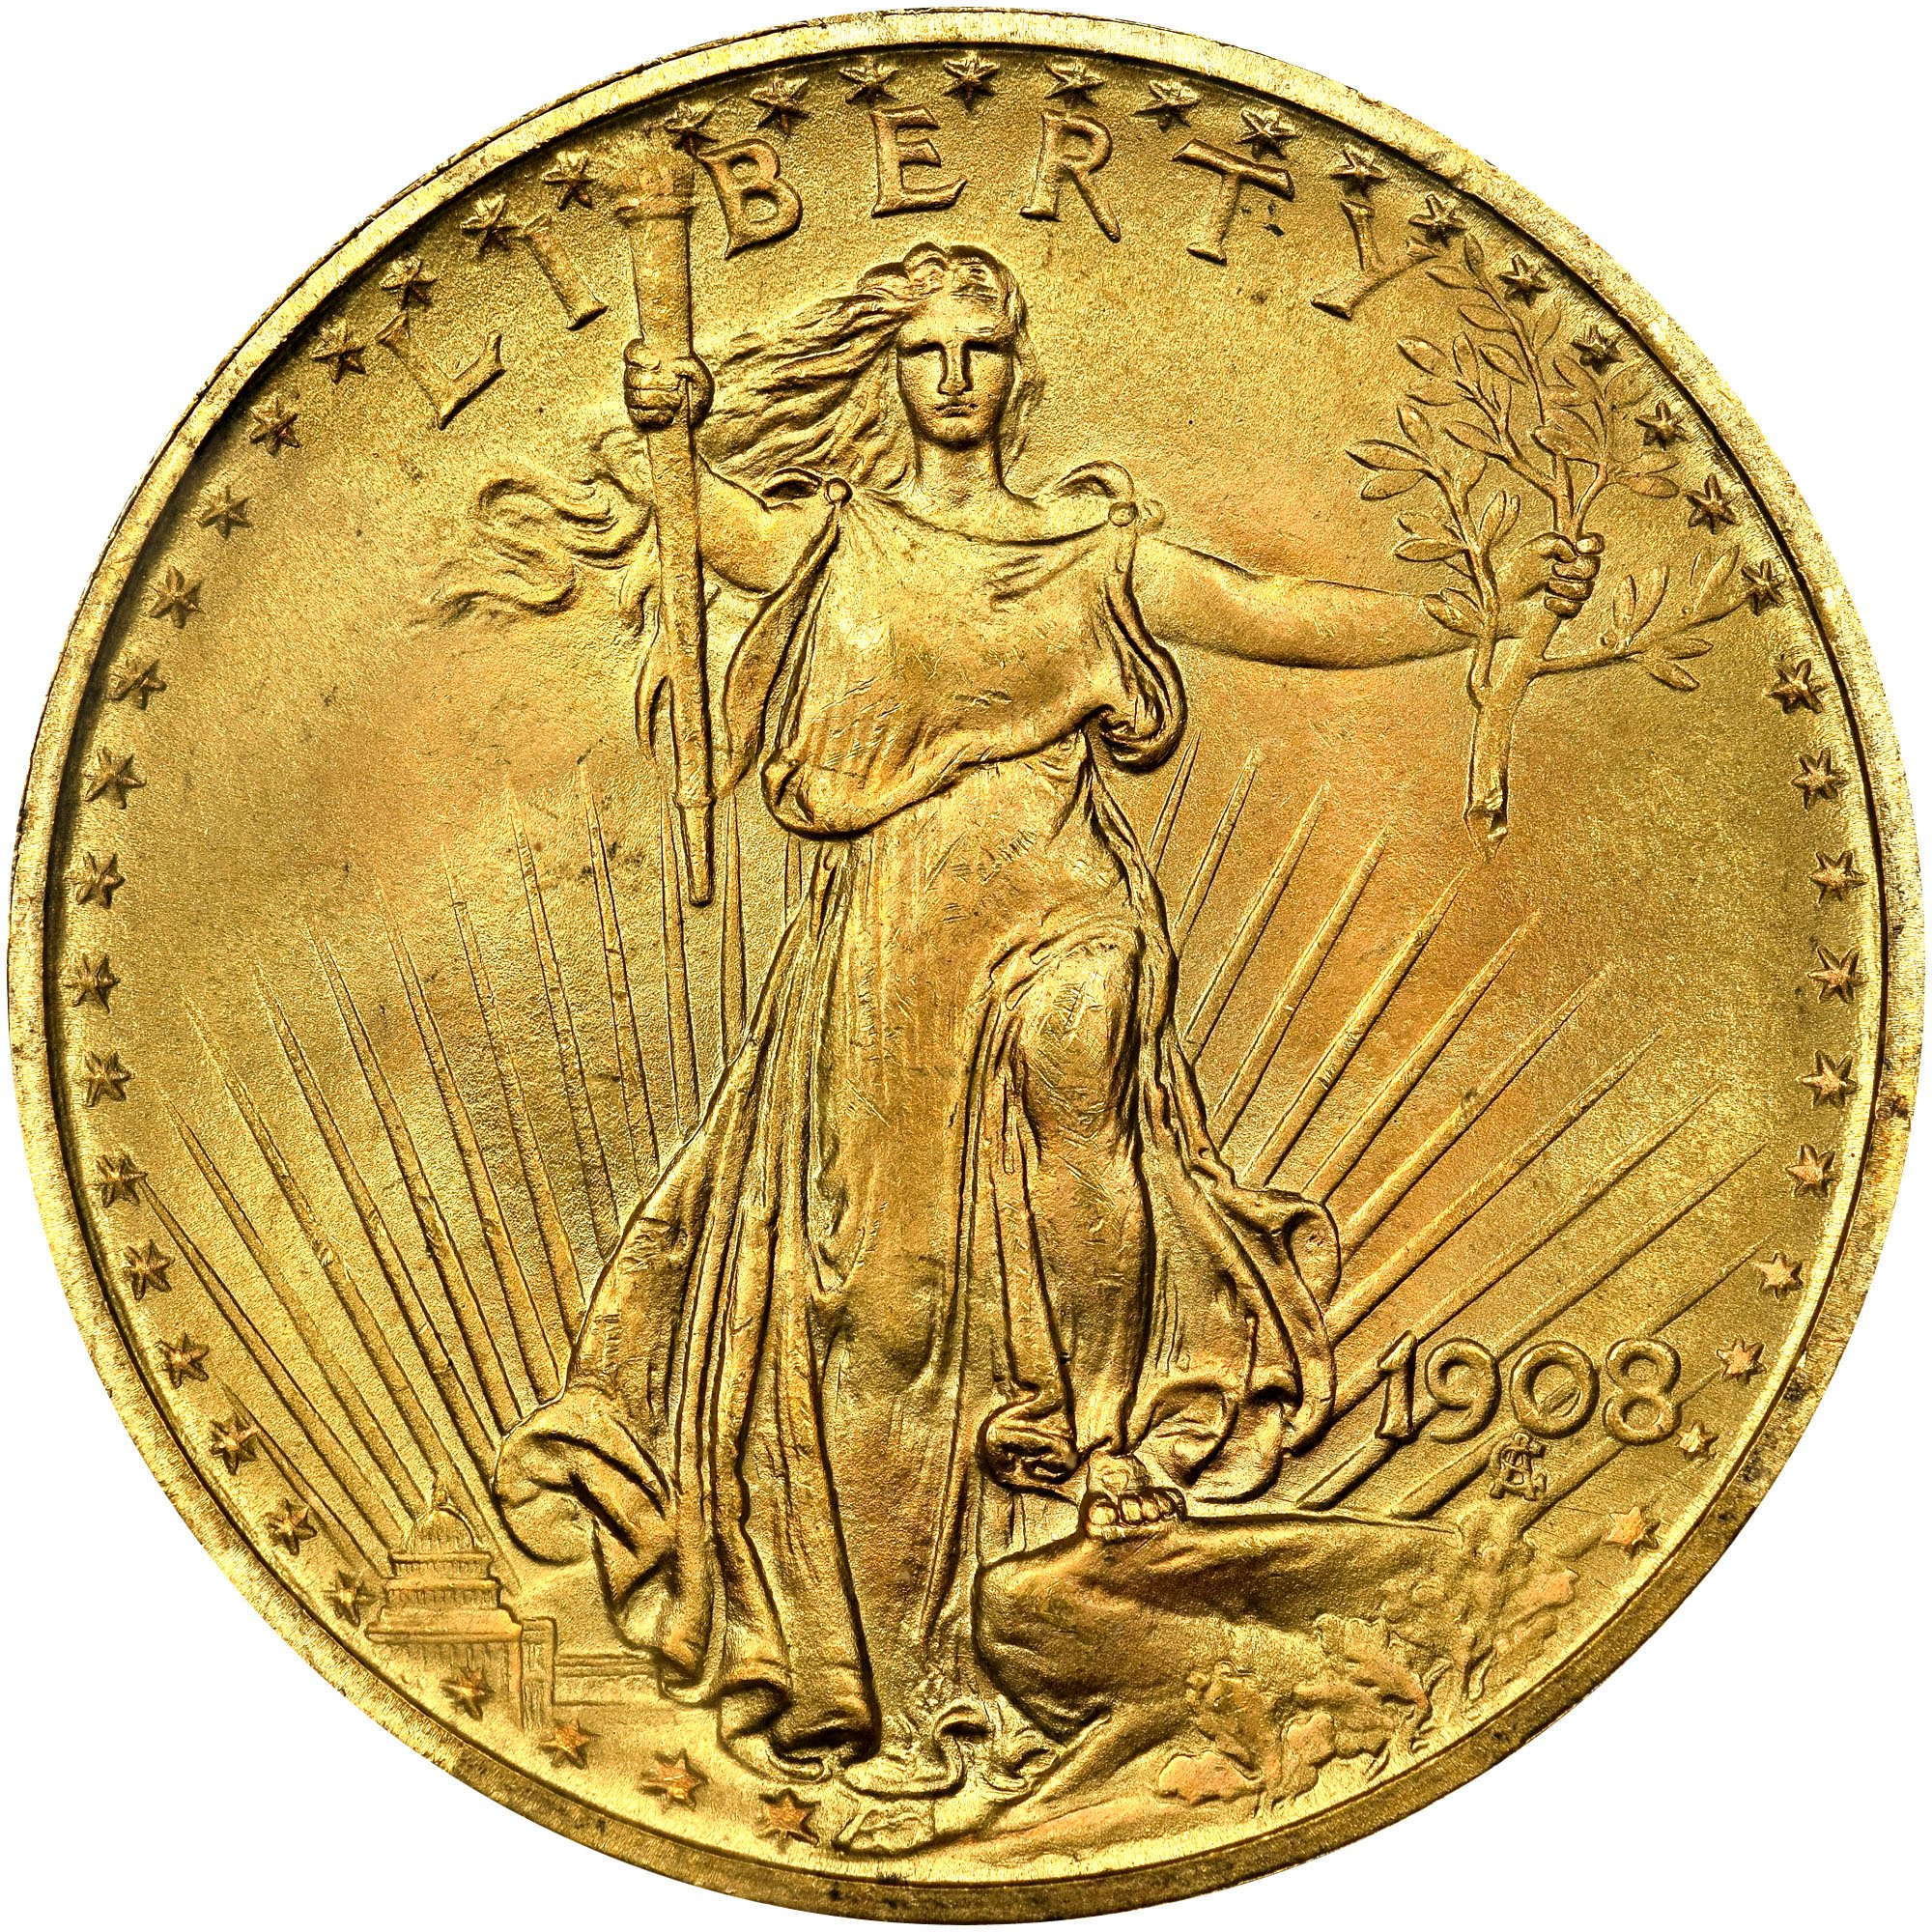 US Gold Saint Gaudens Double Eagle $20 1908-P Obverse